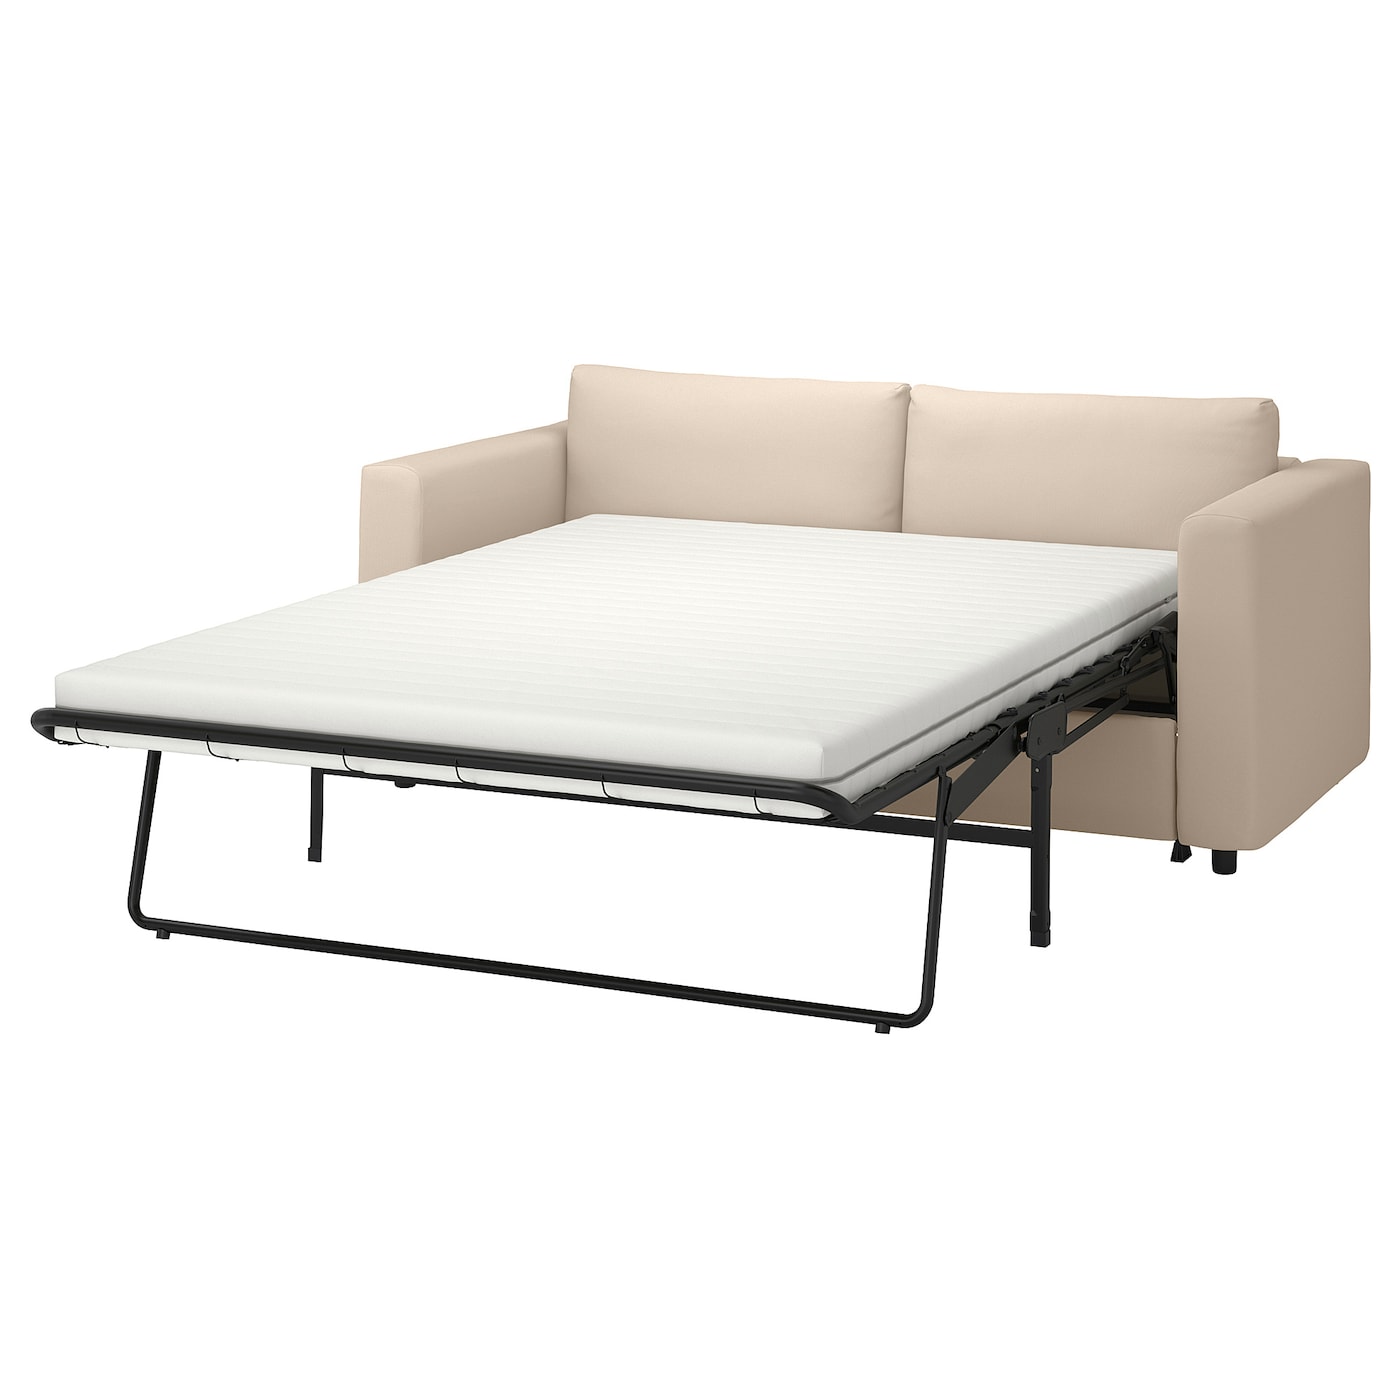 2-местный диван - IKEA VIMLE, 98x190см, бежевый, ВИМЛЕ ИКЕА